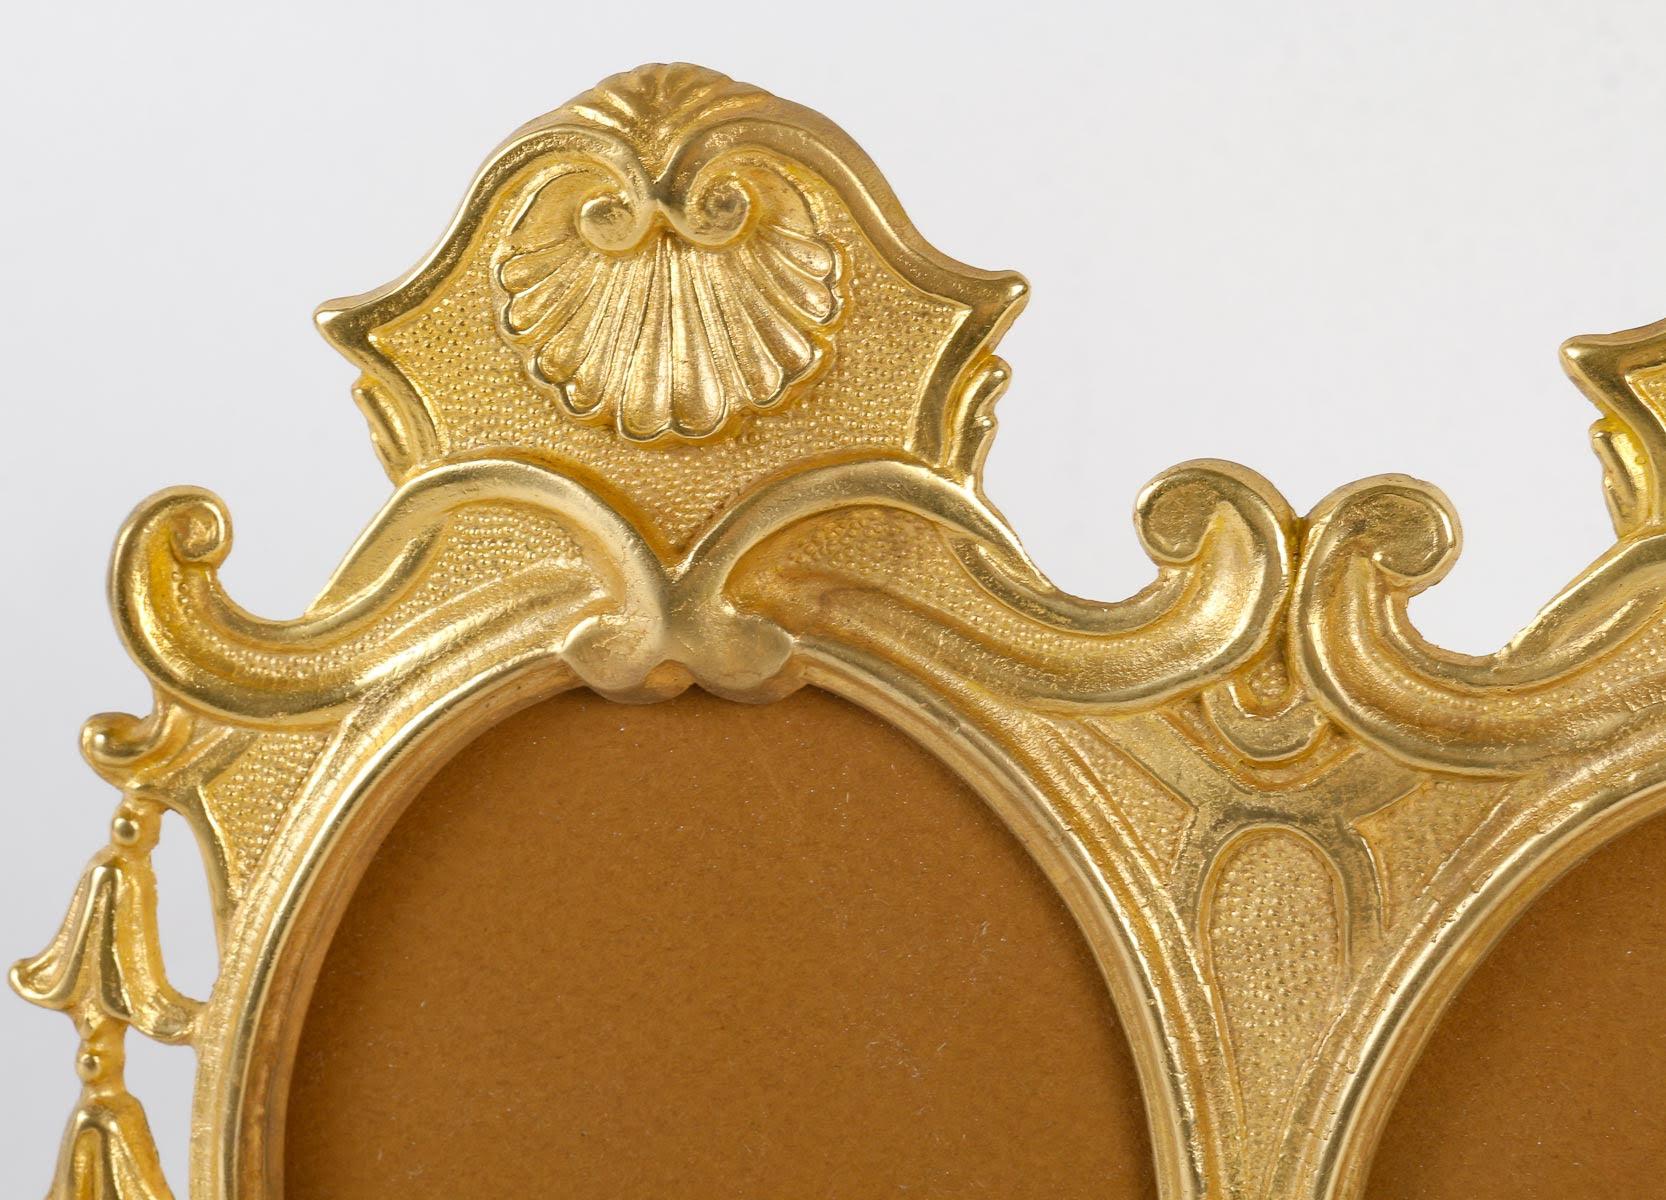 Cadre photo double en bronze doré, période Napoléon III.

Double cadre photo en bronze doré, style Louis XV, époque Napoléon III, XIXe siècle.
H : 23,5cm, L : 19cm, P : 1,5cm